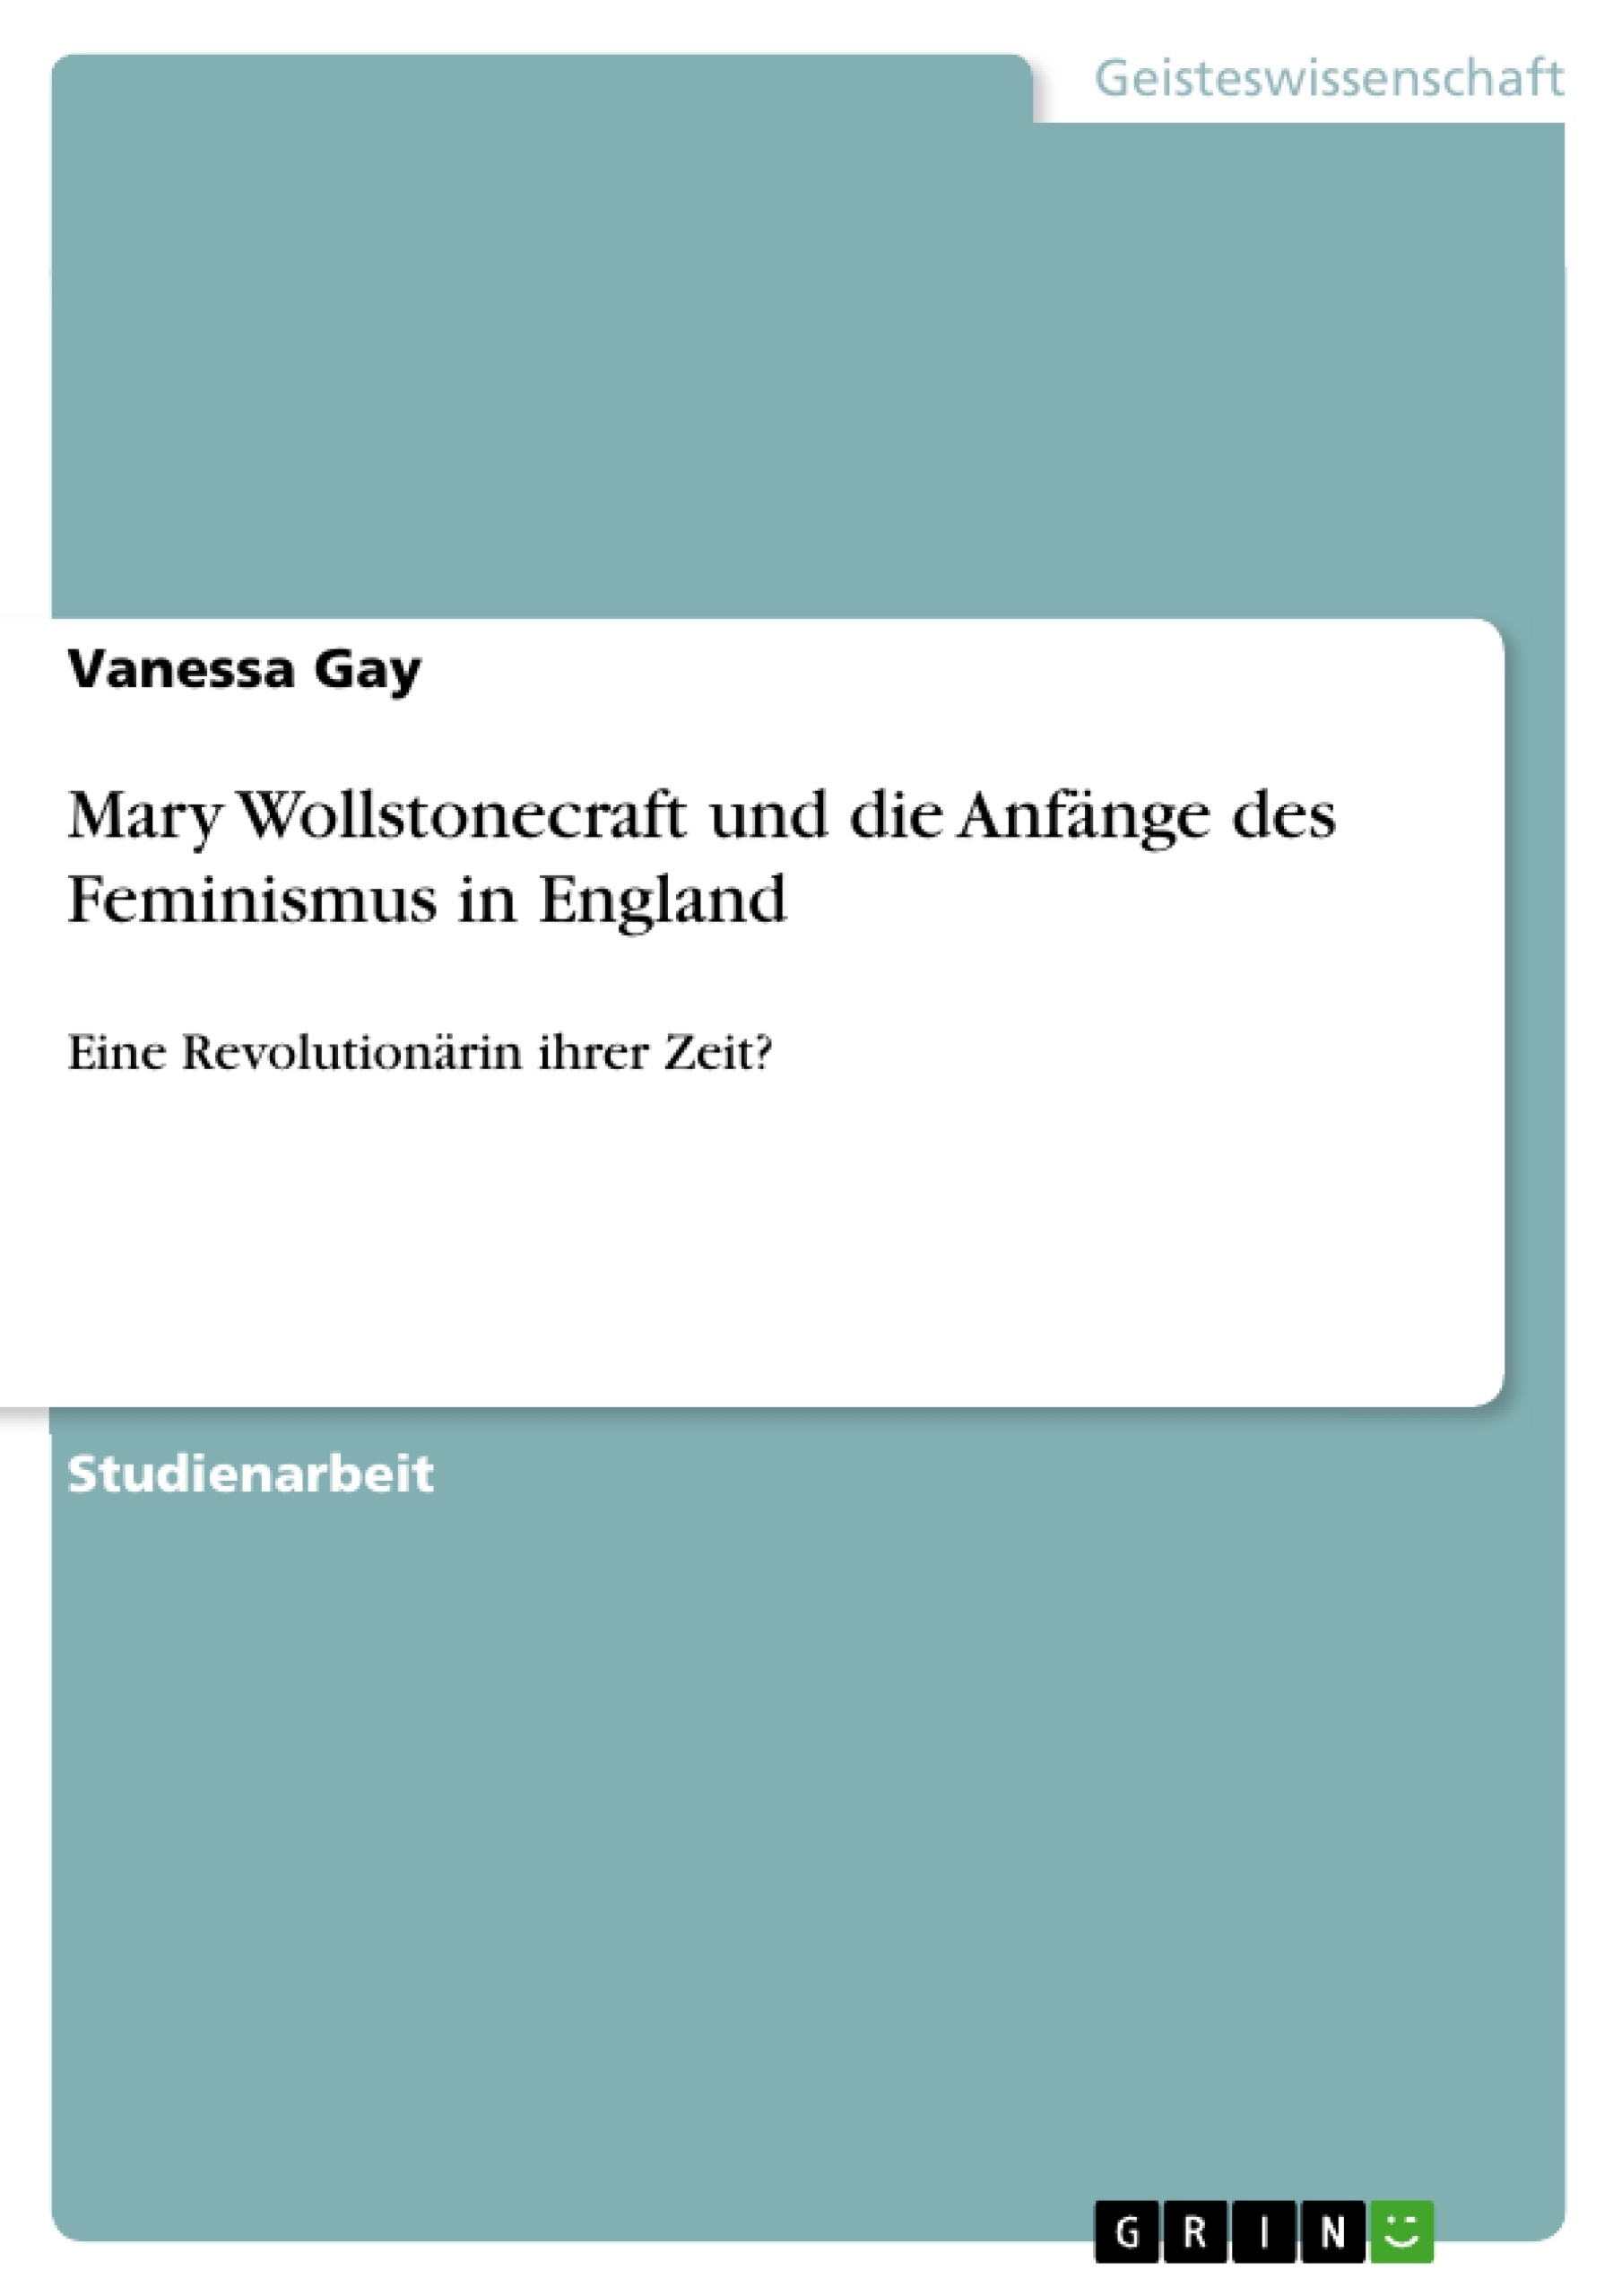 Título: Mary Wollstonecraft und die Anfänge des Feminismus in England